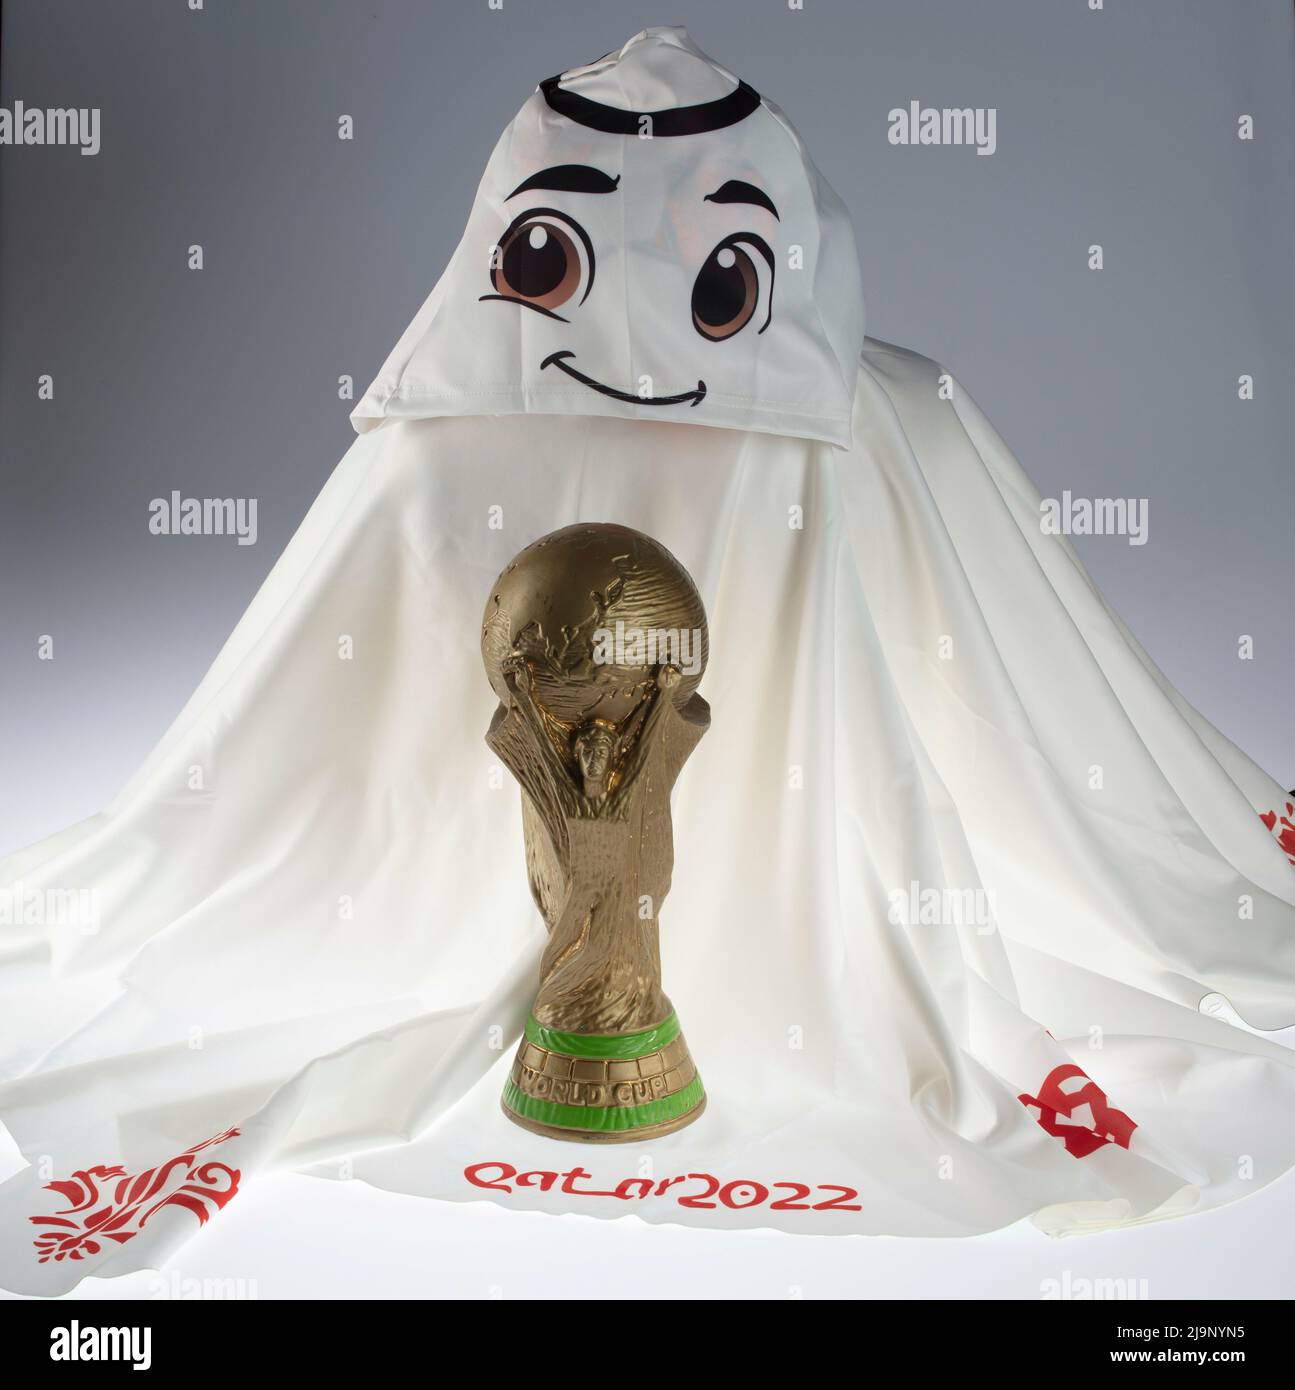 Meet La'eeb, official mascot of FIFA World Cup 2022 in Qatar